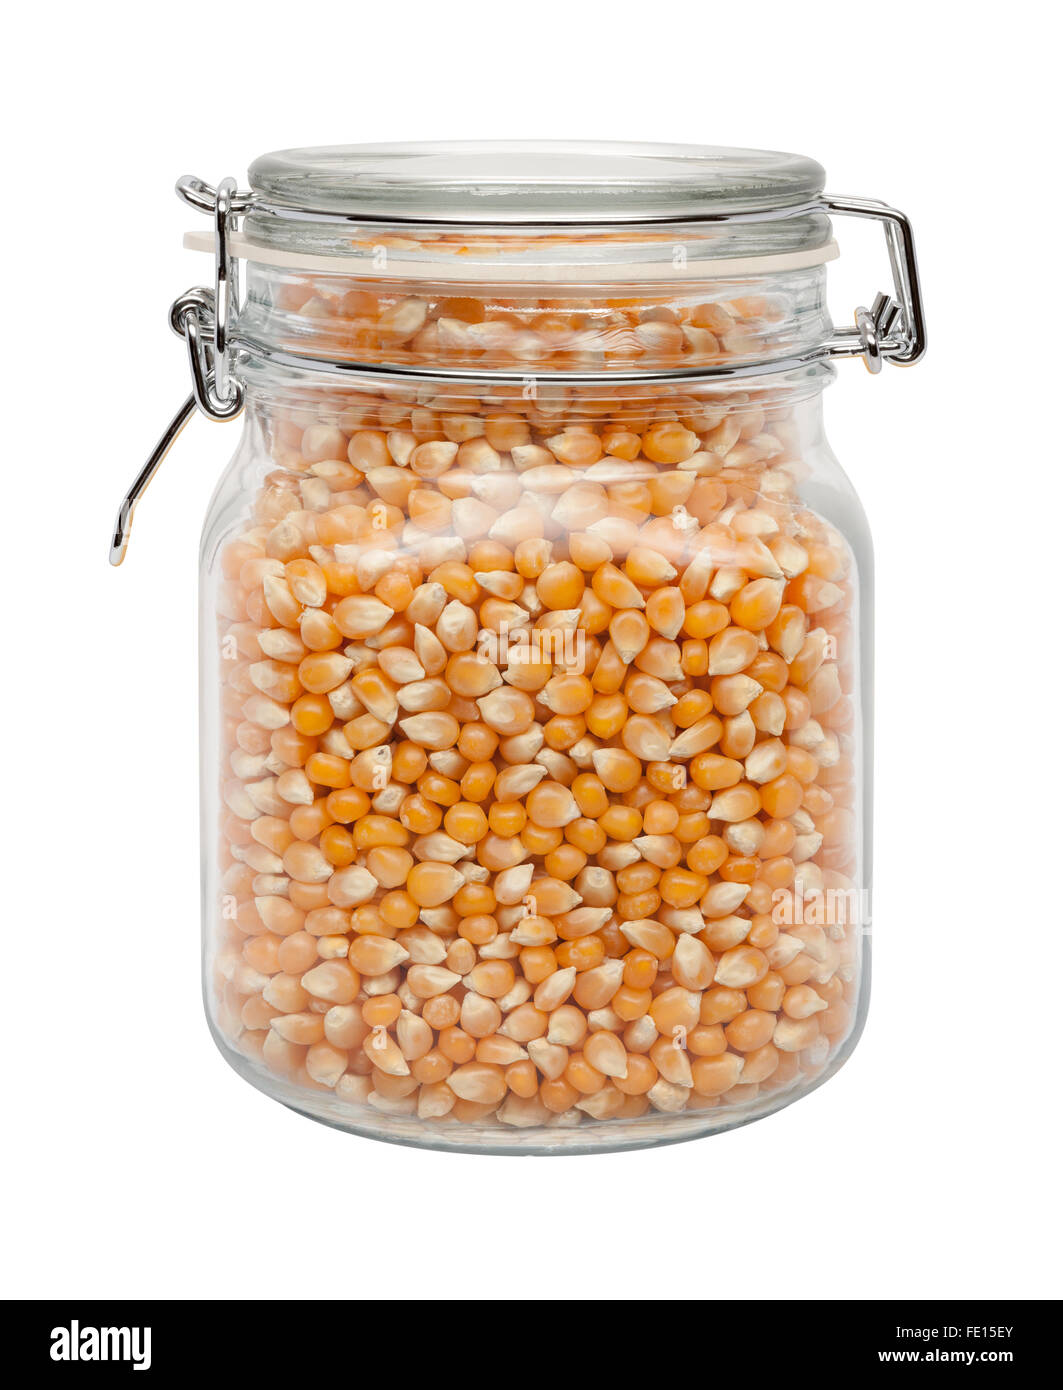 Palomitas de maíz sin cocer en un recipiente de cristal con una abrazadera metálica. La imagen es un recorte, aislado en un fondo blanco. Foto de stock